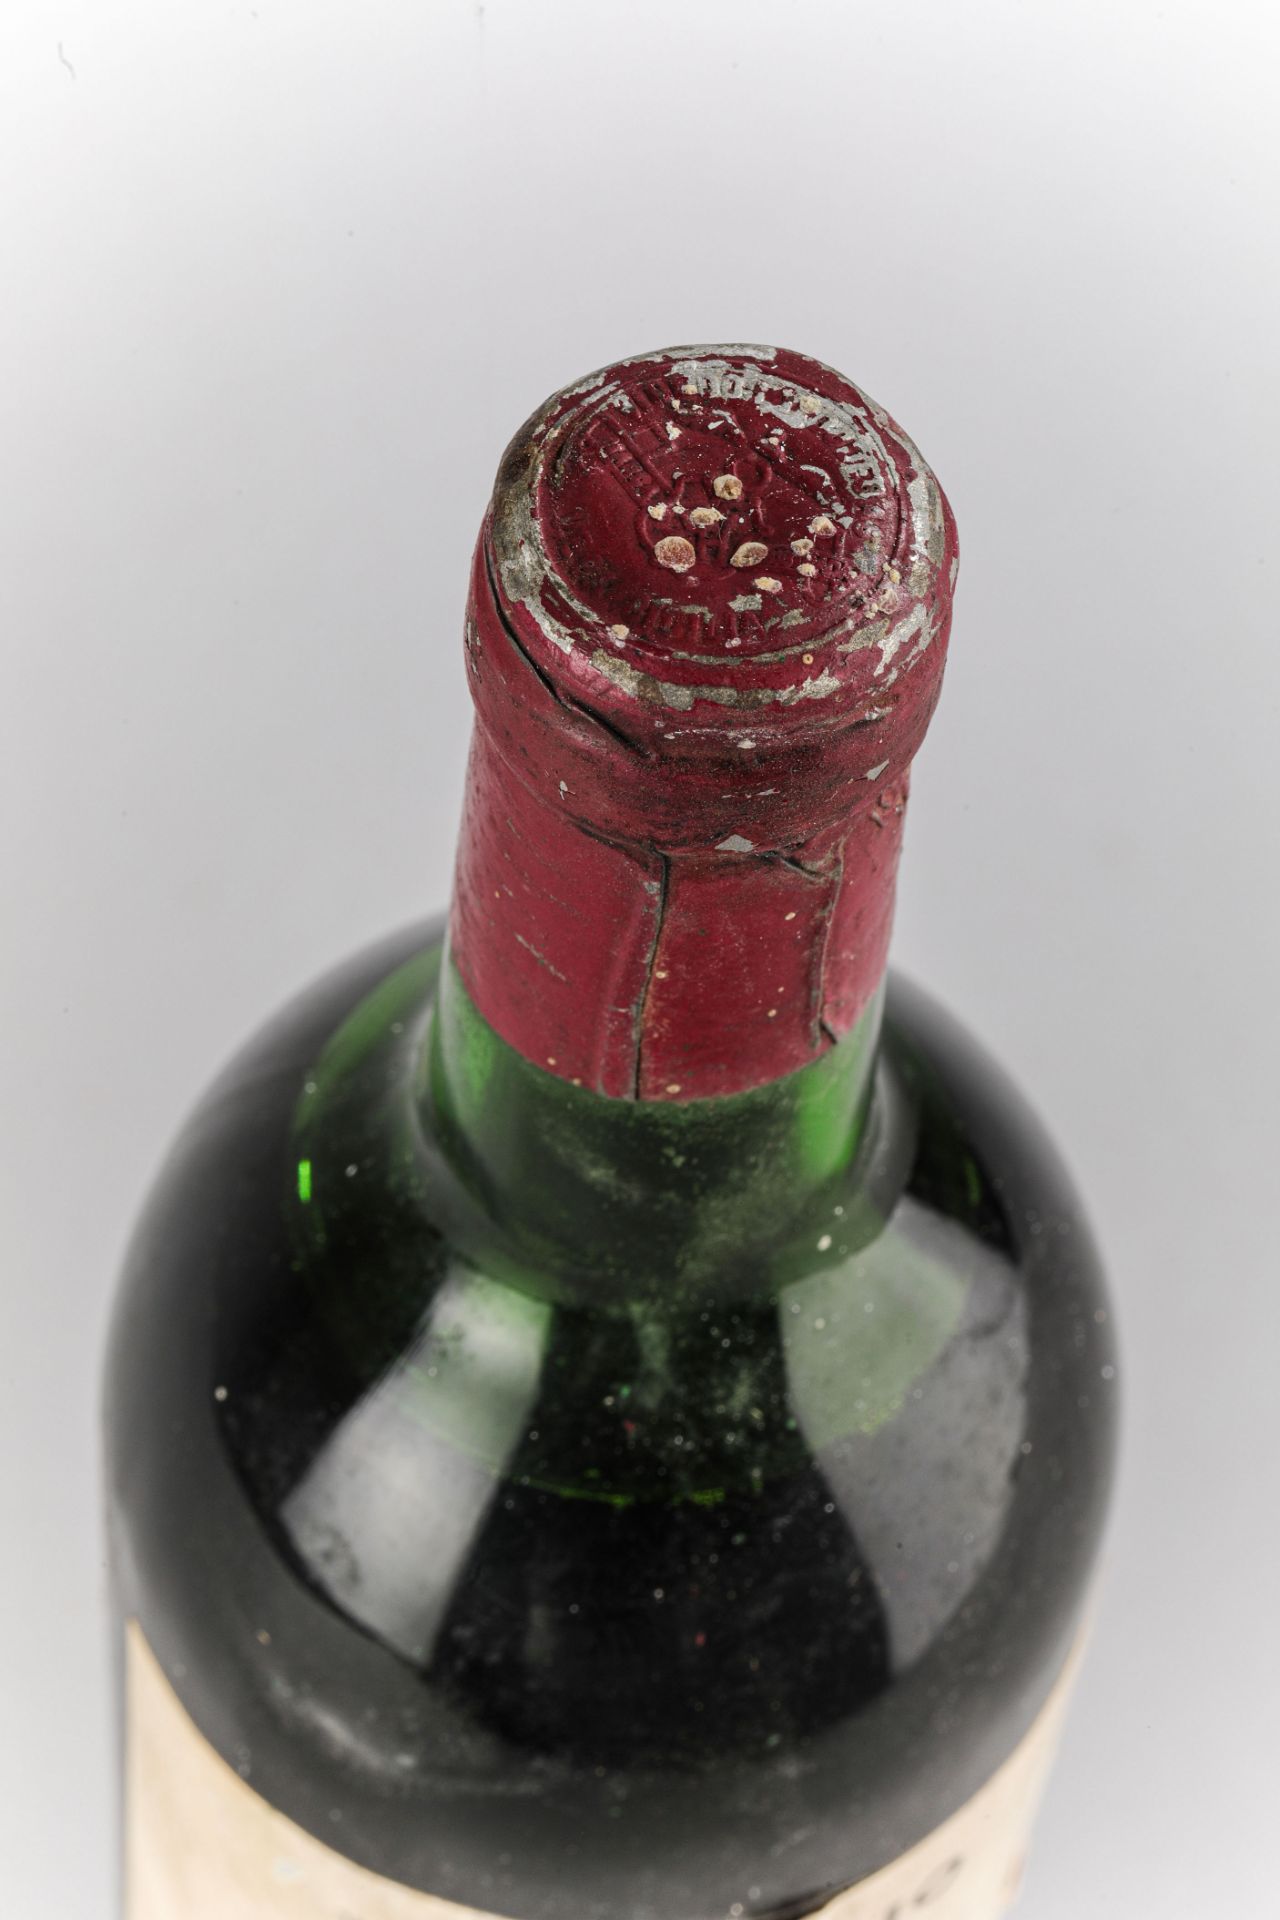 VEGA SICILIA UNICO. 1966. Ribera del Duero. Bouteille N°07518 sur production de 96 000 bouteilles. - Image 4 of 4